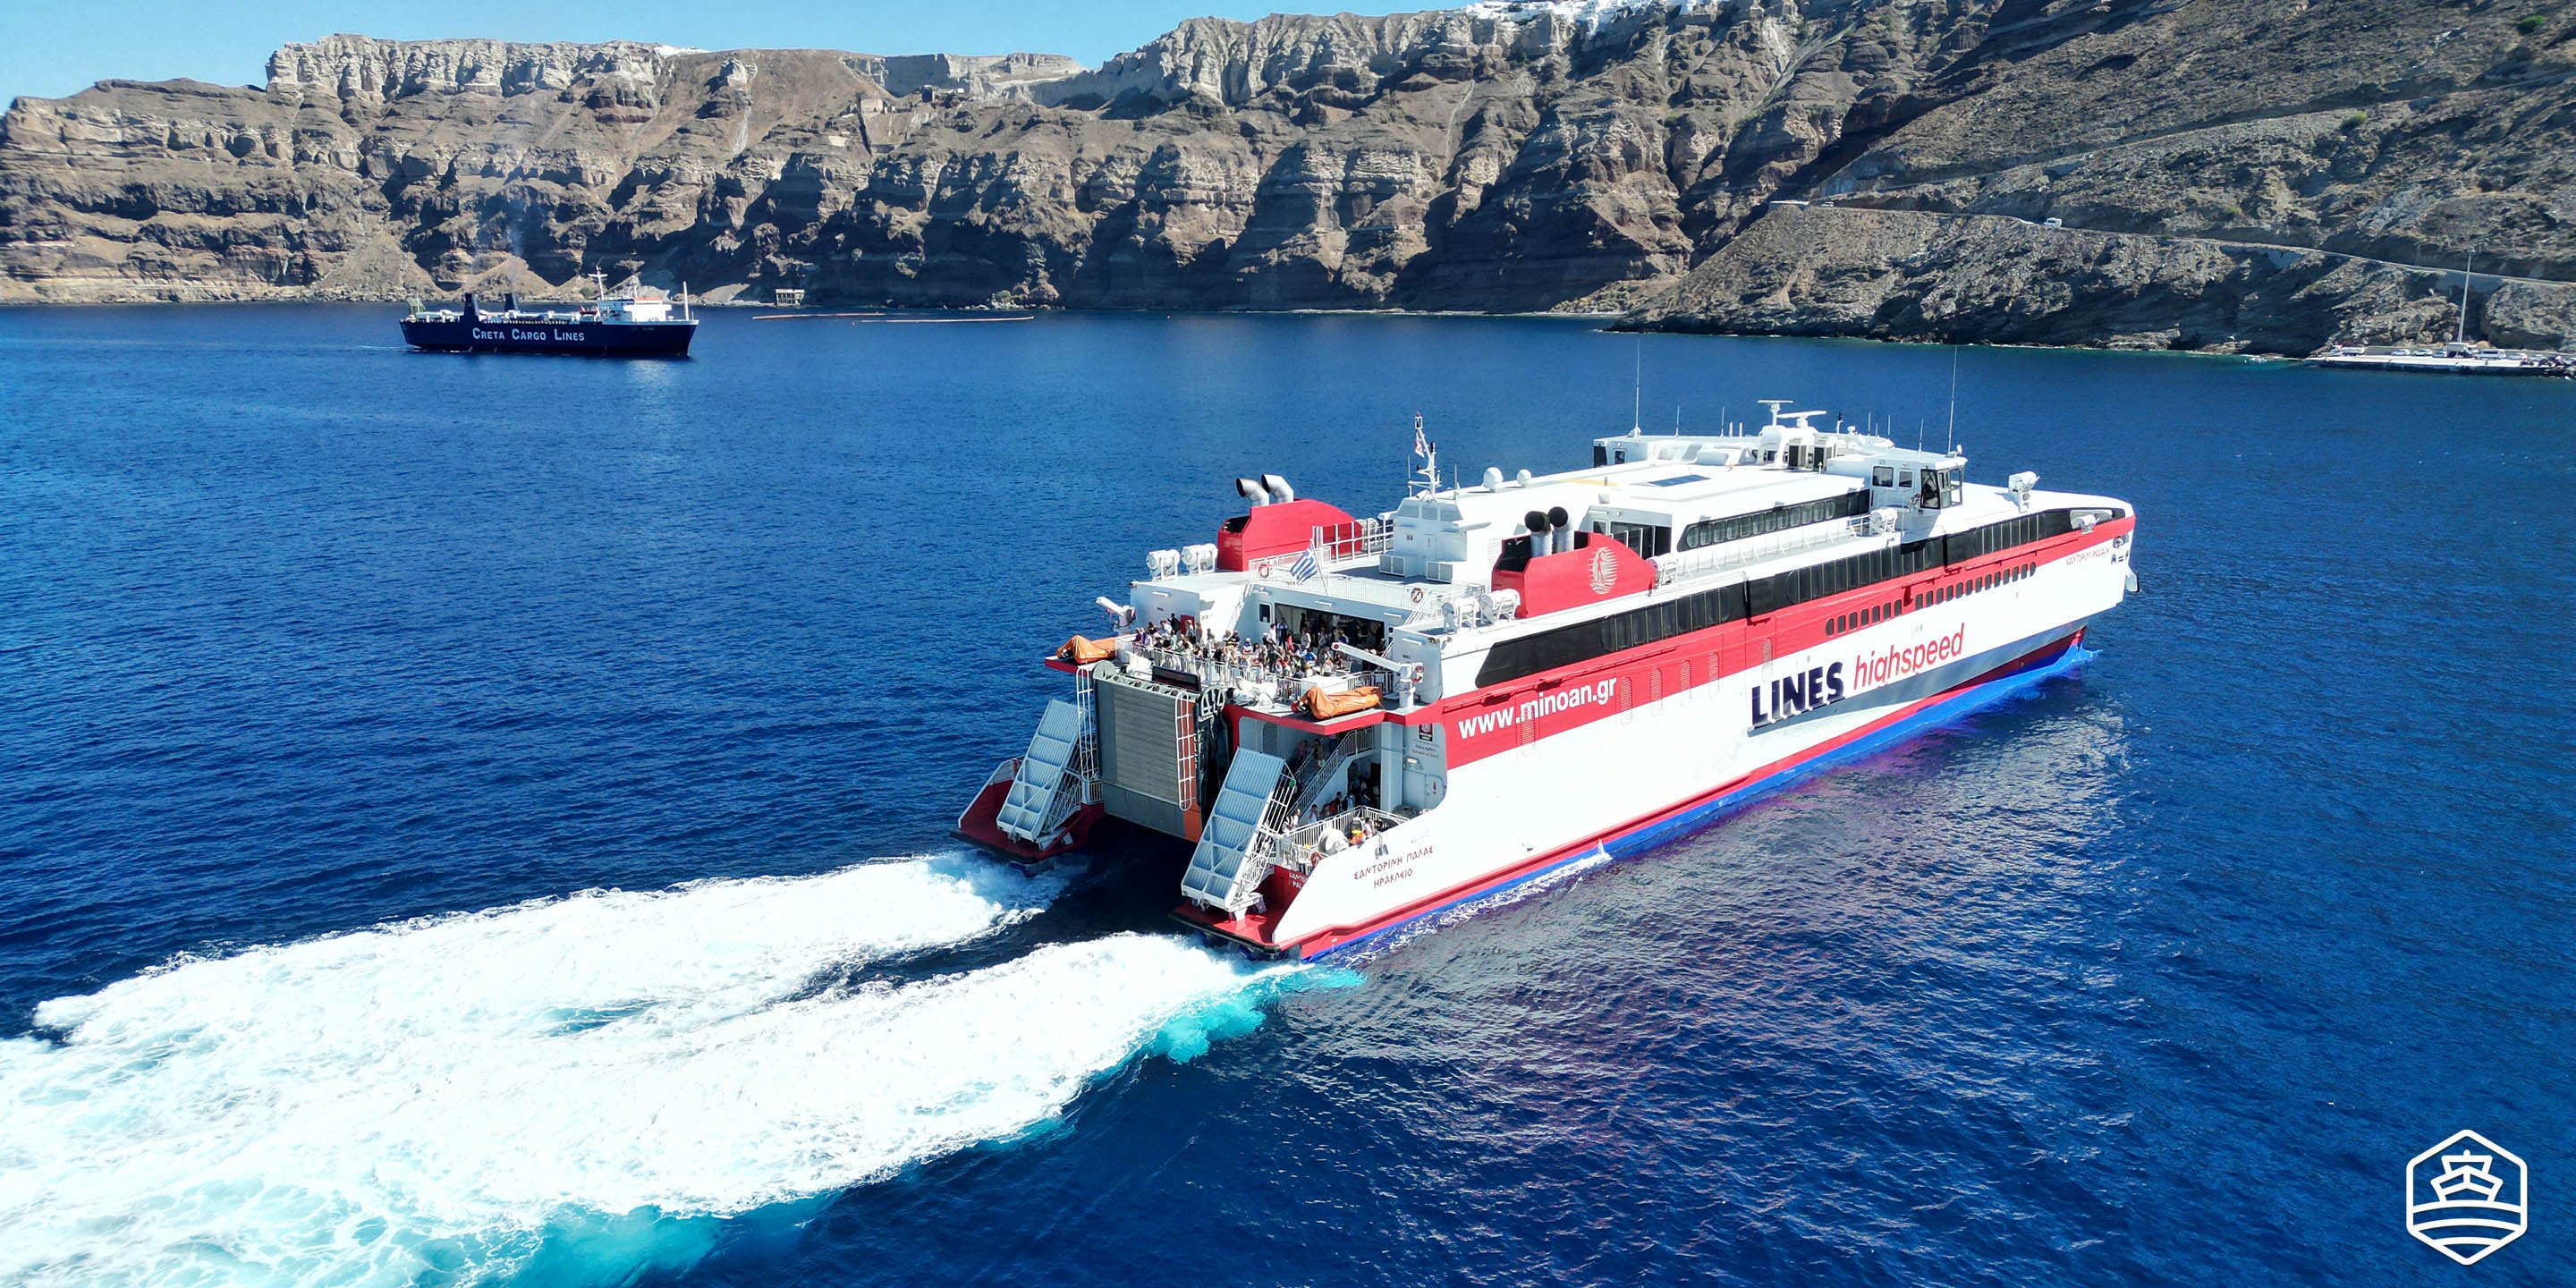 Το ταχύπλοο πλοίο Santorini Palace της Minoan Lines με άφιξη στο λιμάνι του Αθηνιού από το Ηράκλειο Κρήτης